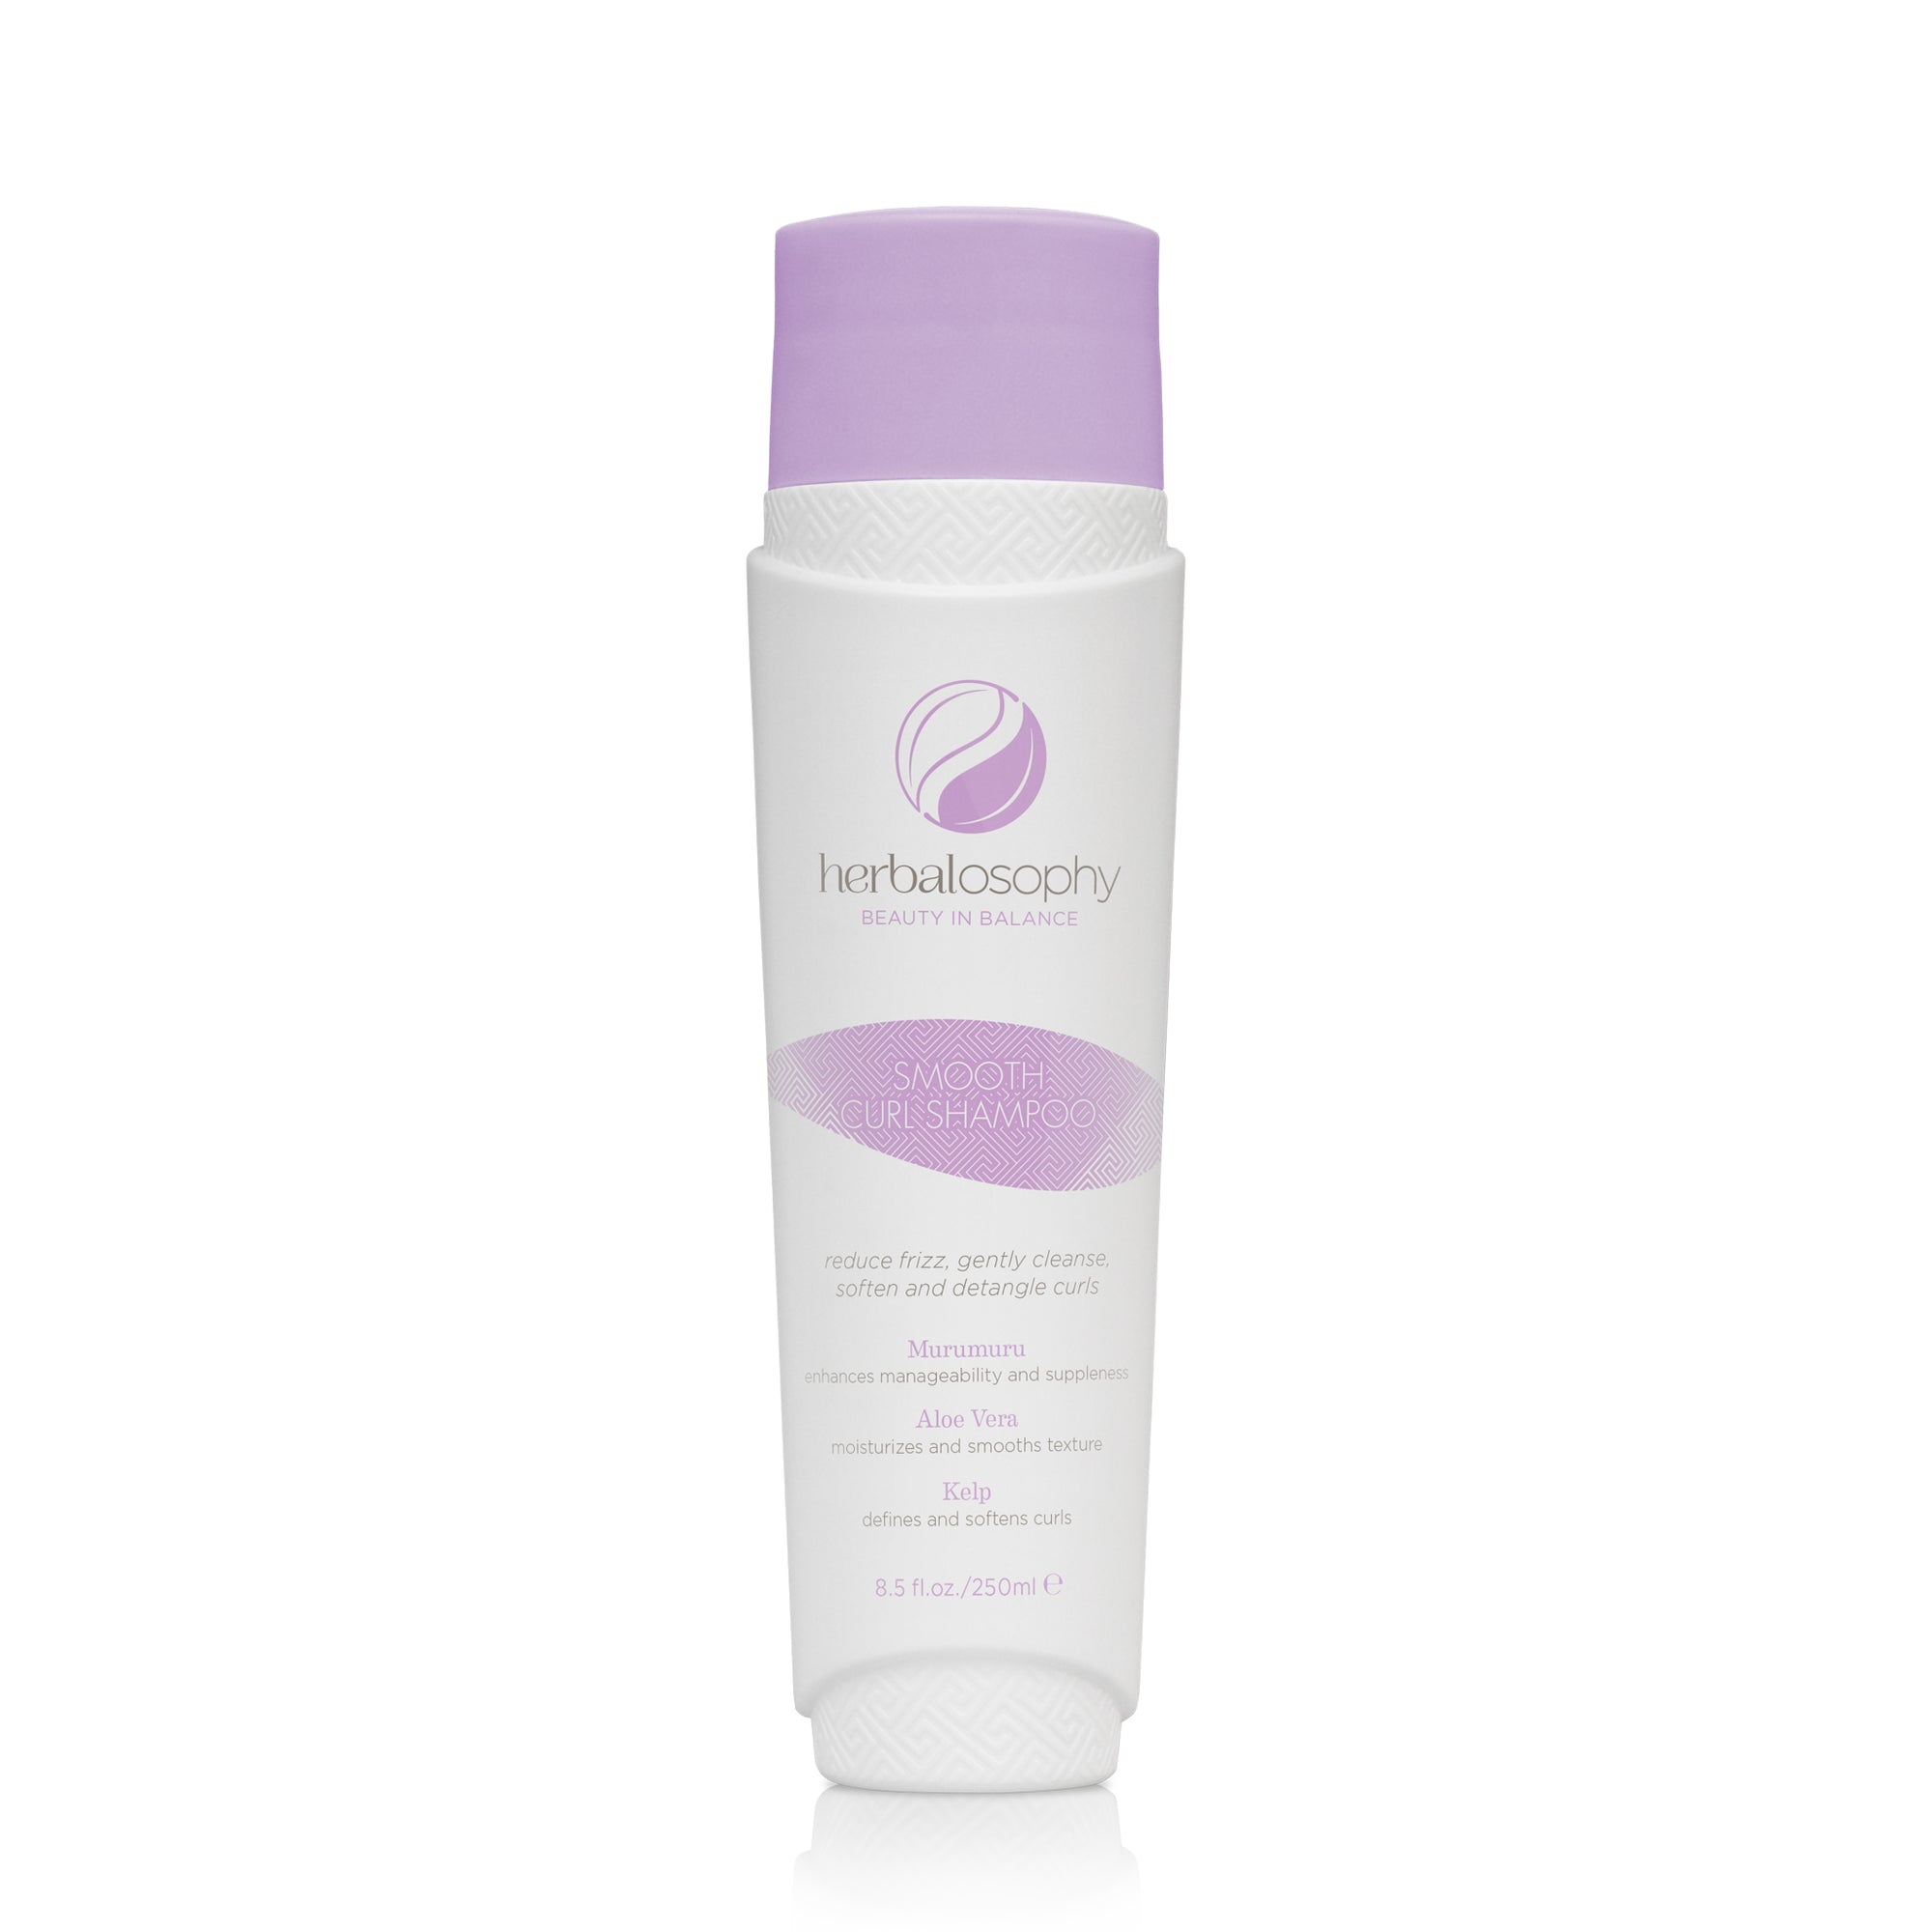 Herbalosophy Smooth Curl Shampoo bottle 8.5oz